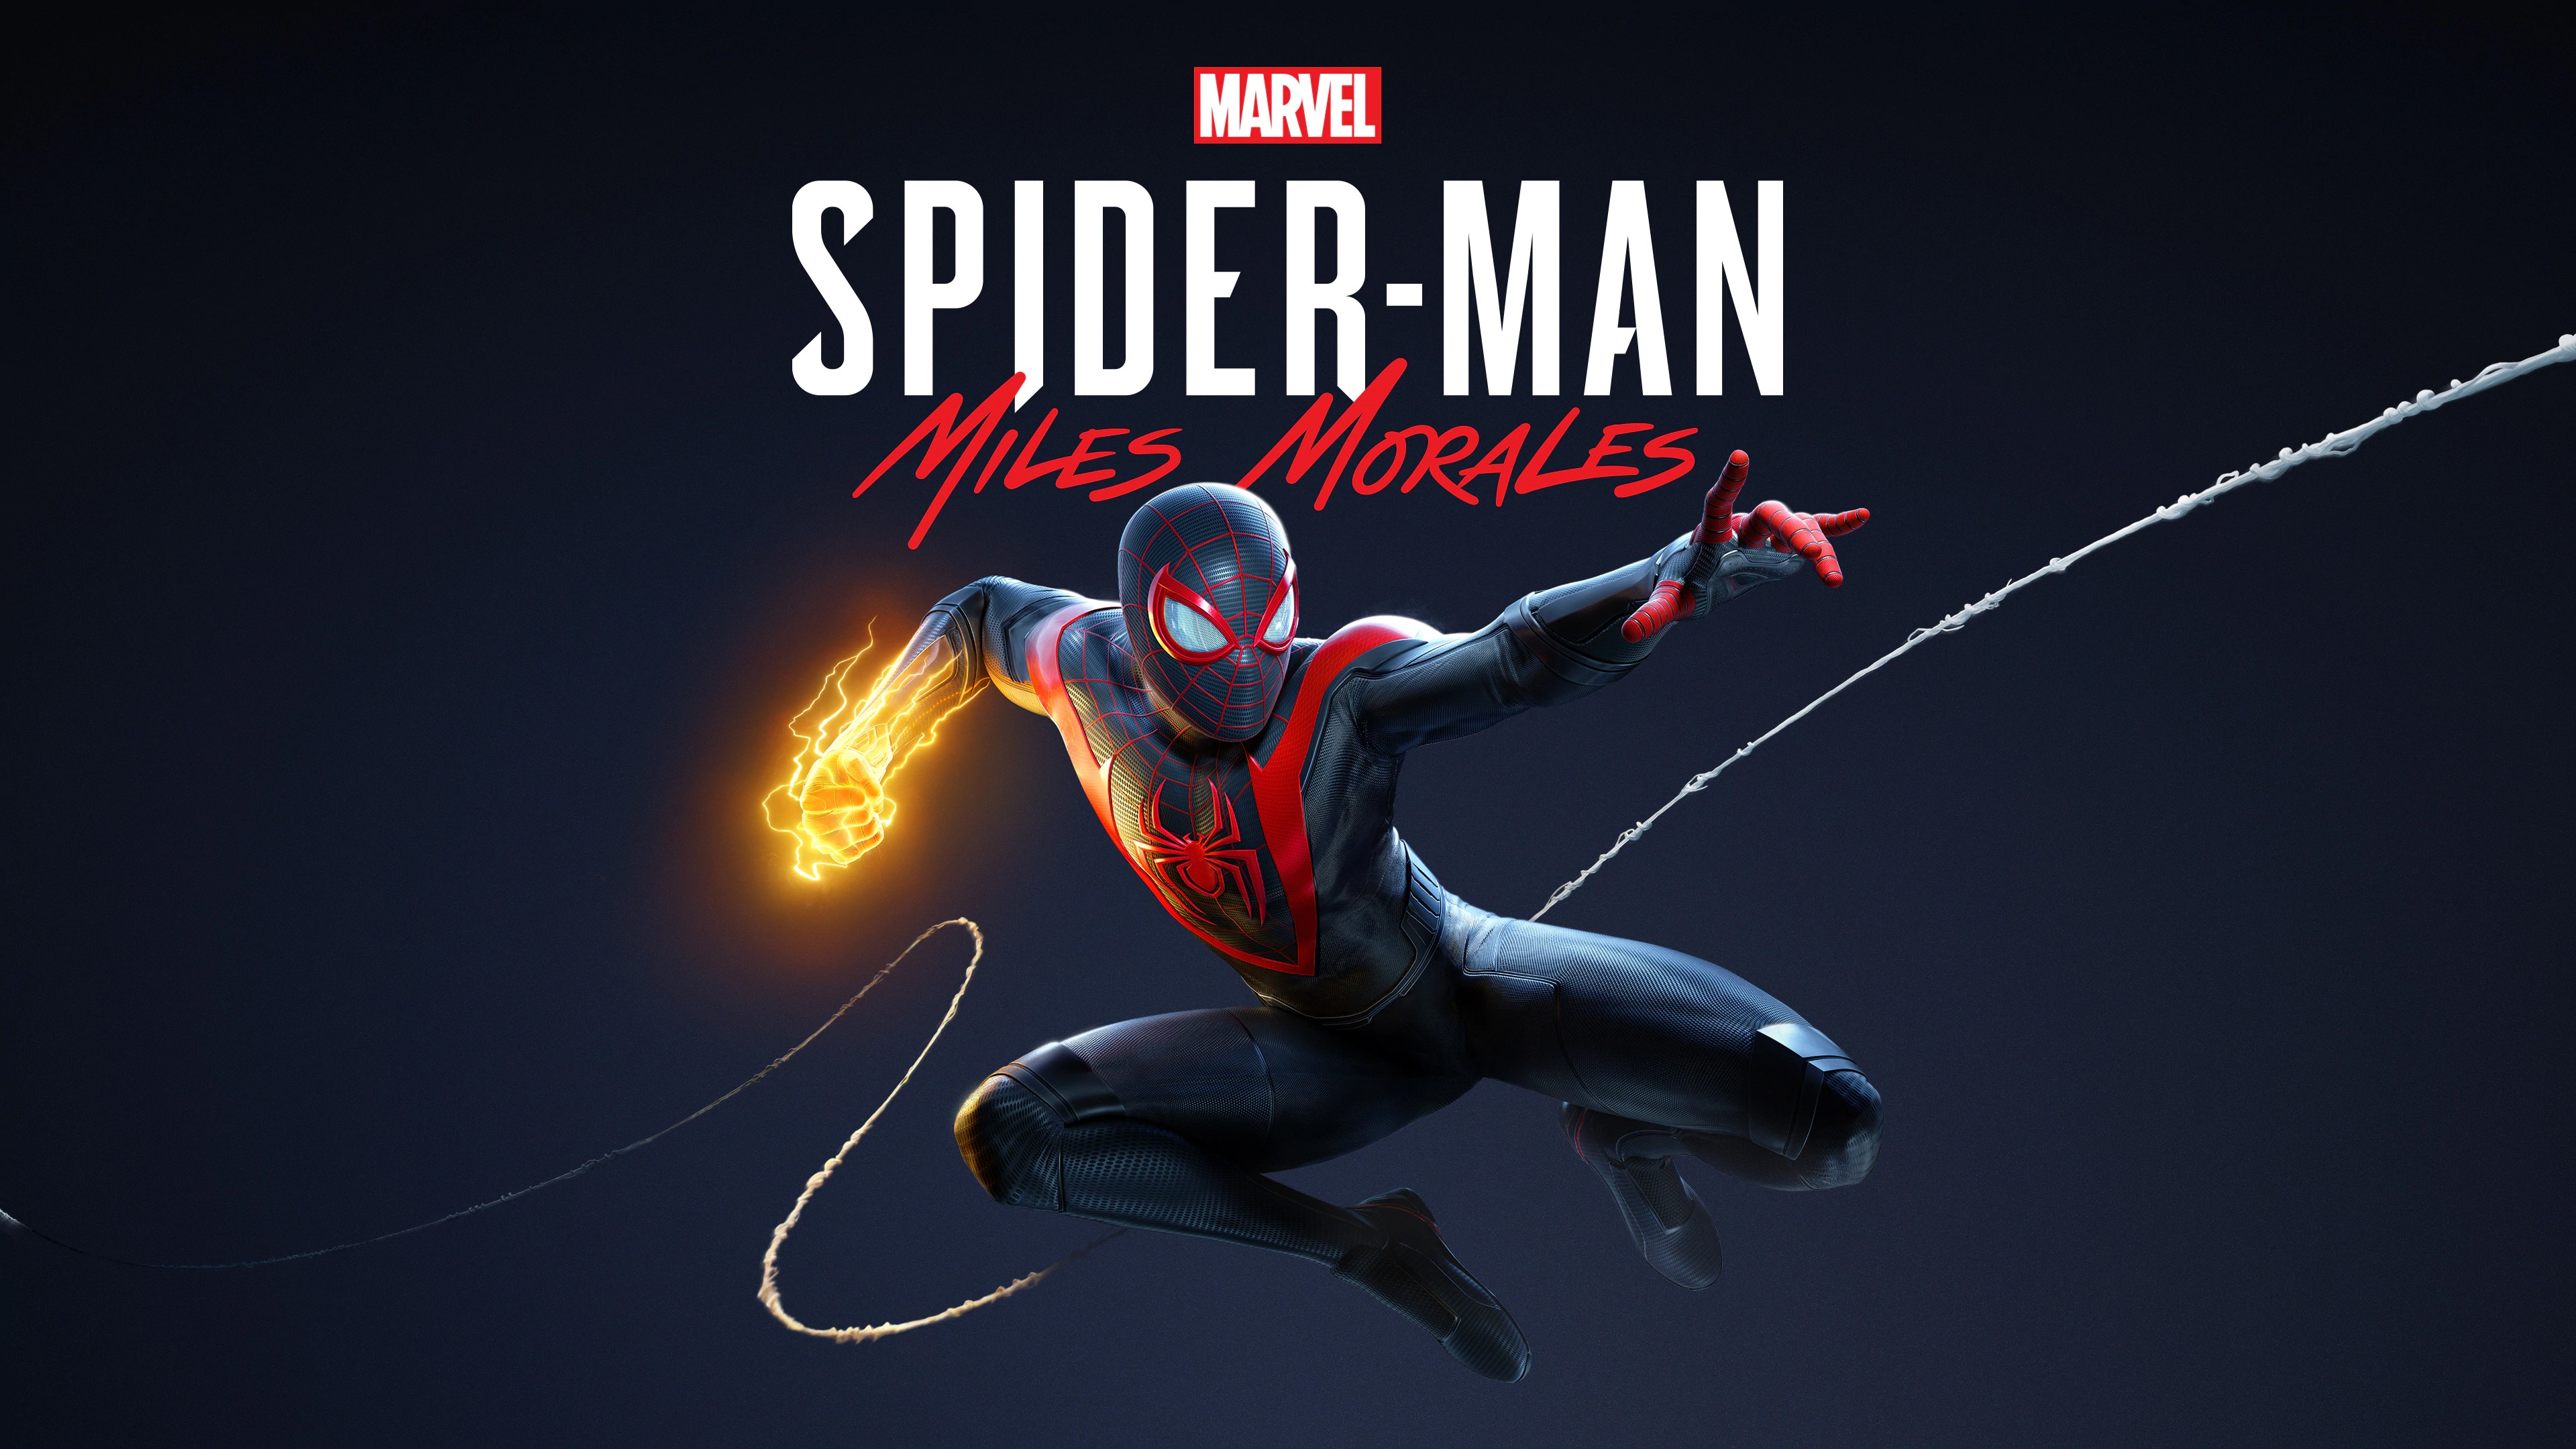 Marvel's Человек-паук /// Spider-Man: Miles Morales ( прохождение 5 )